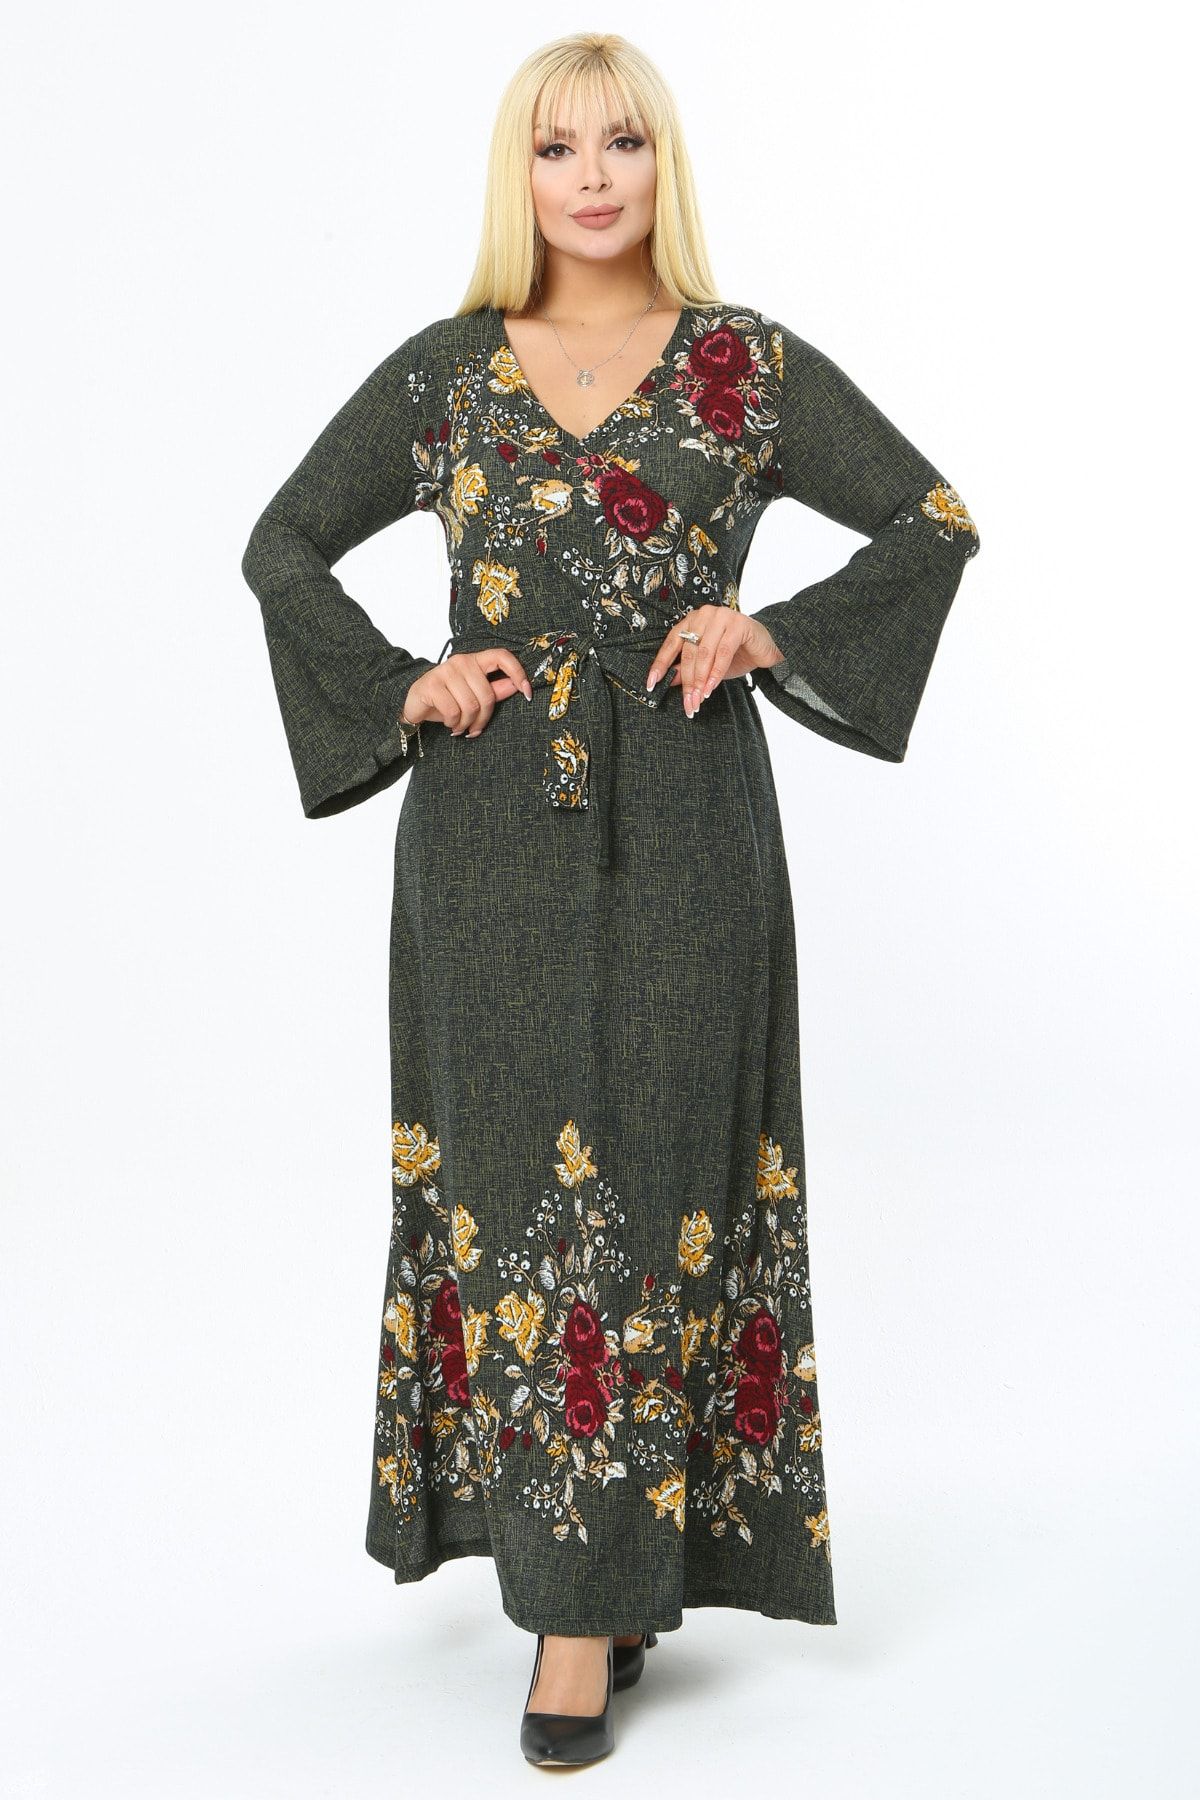 MAYAXL Kadın Kruvaze Yaka Krep Çiçek Desenli Yeşil Büyük Beden Elbise